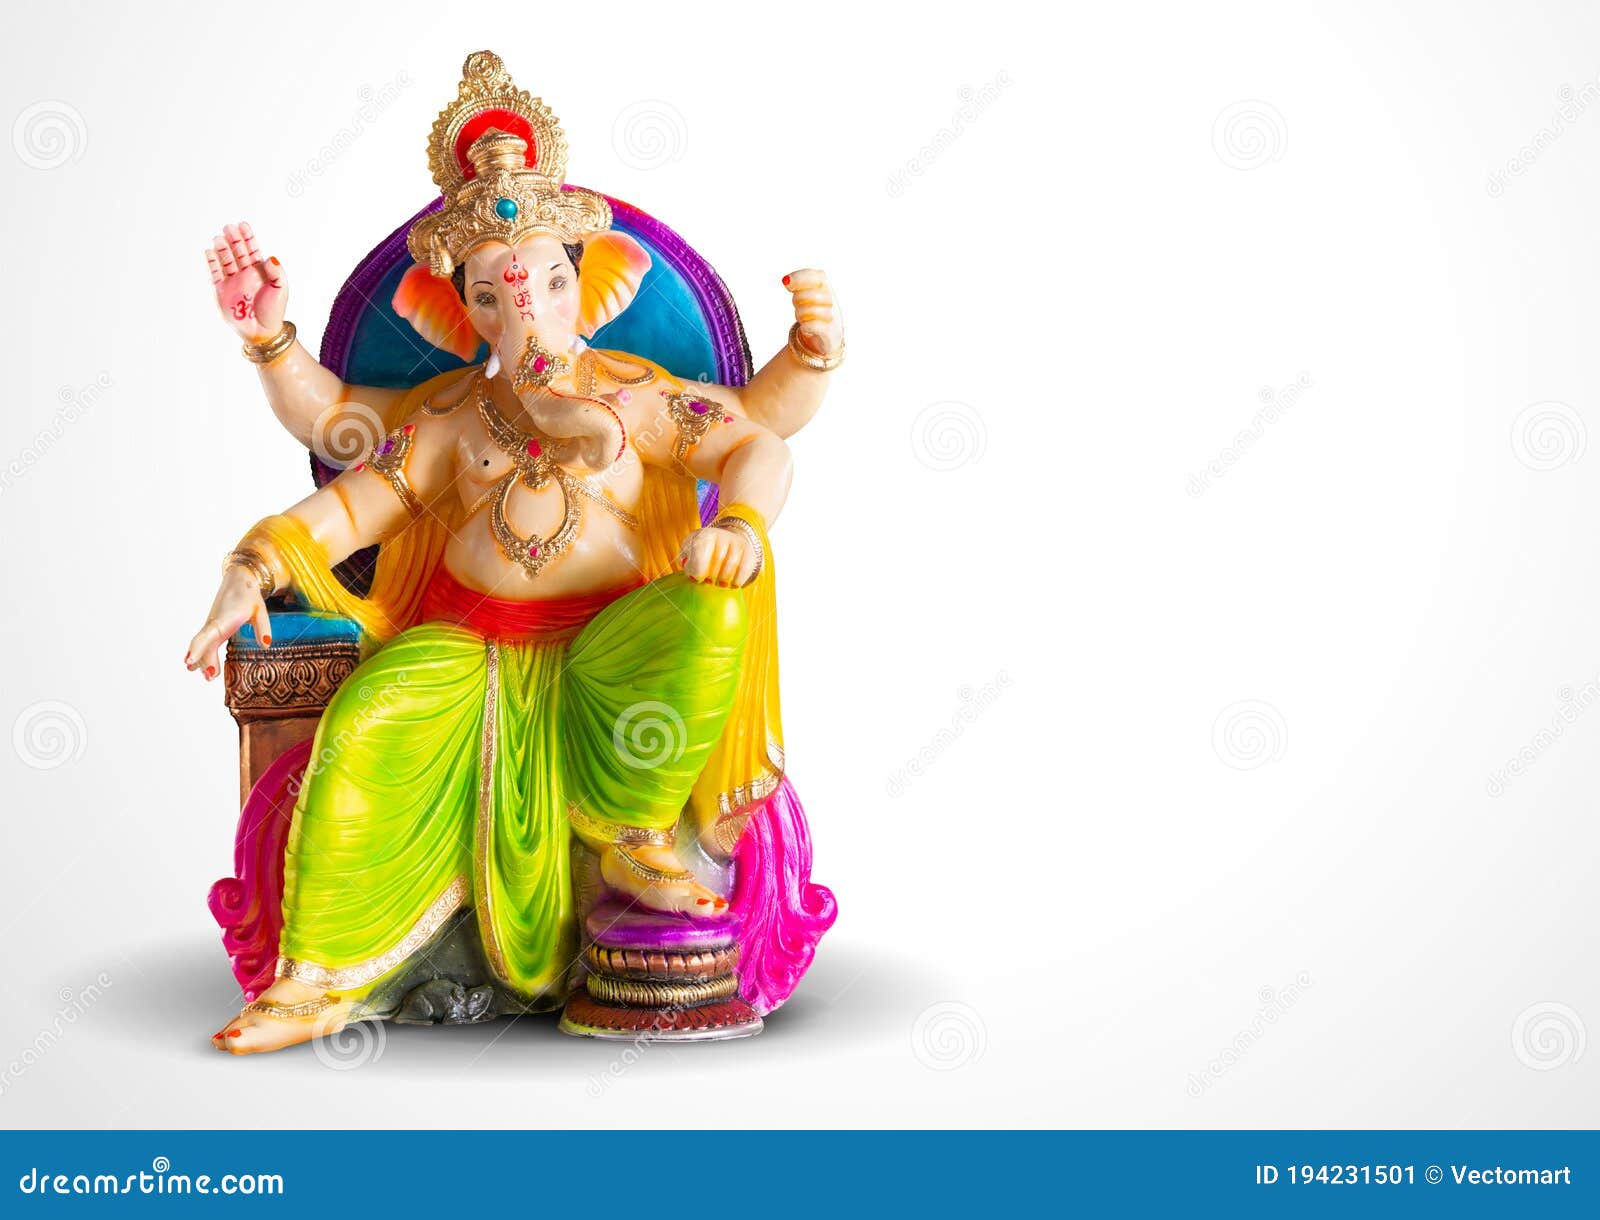 Lord Ganpati Idol for Happy Ganesh Chaturthi Festival of India Stock Image  - Image of chaturthi, celebration: 194231501